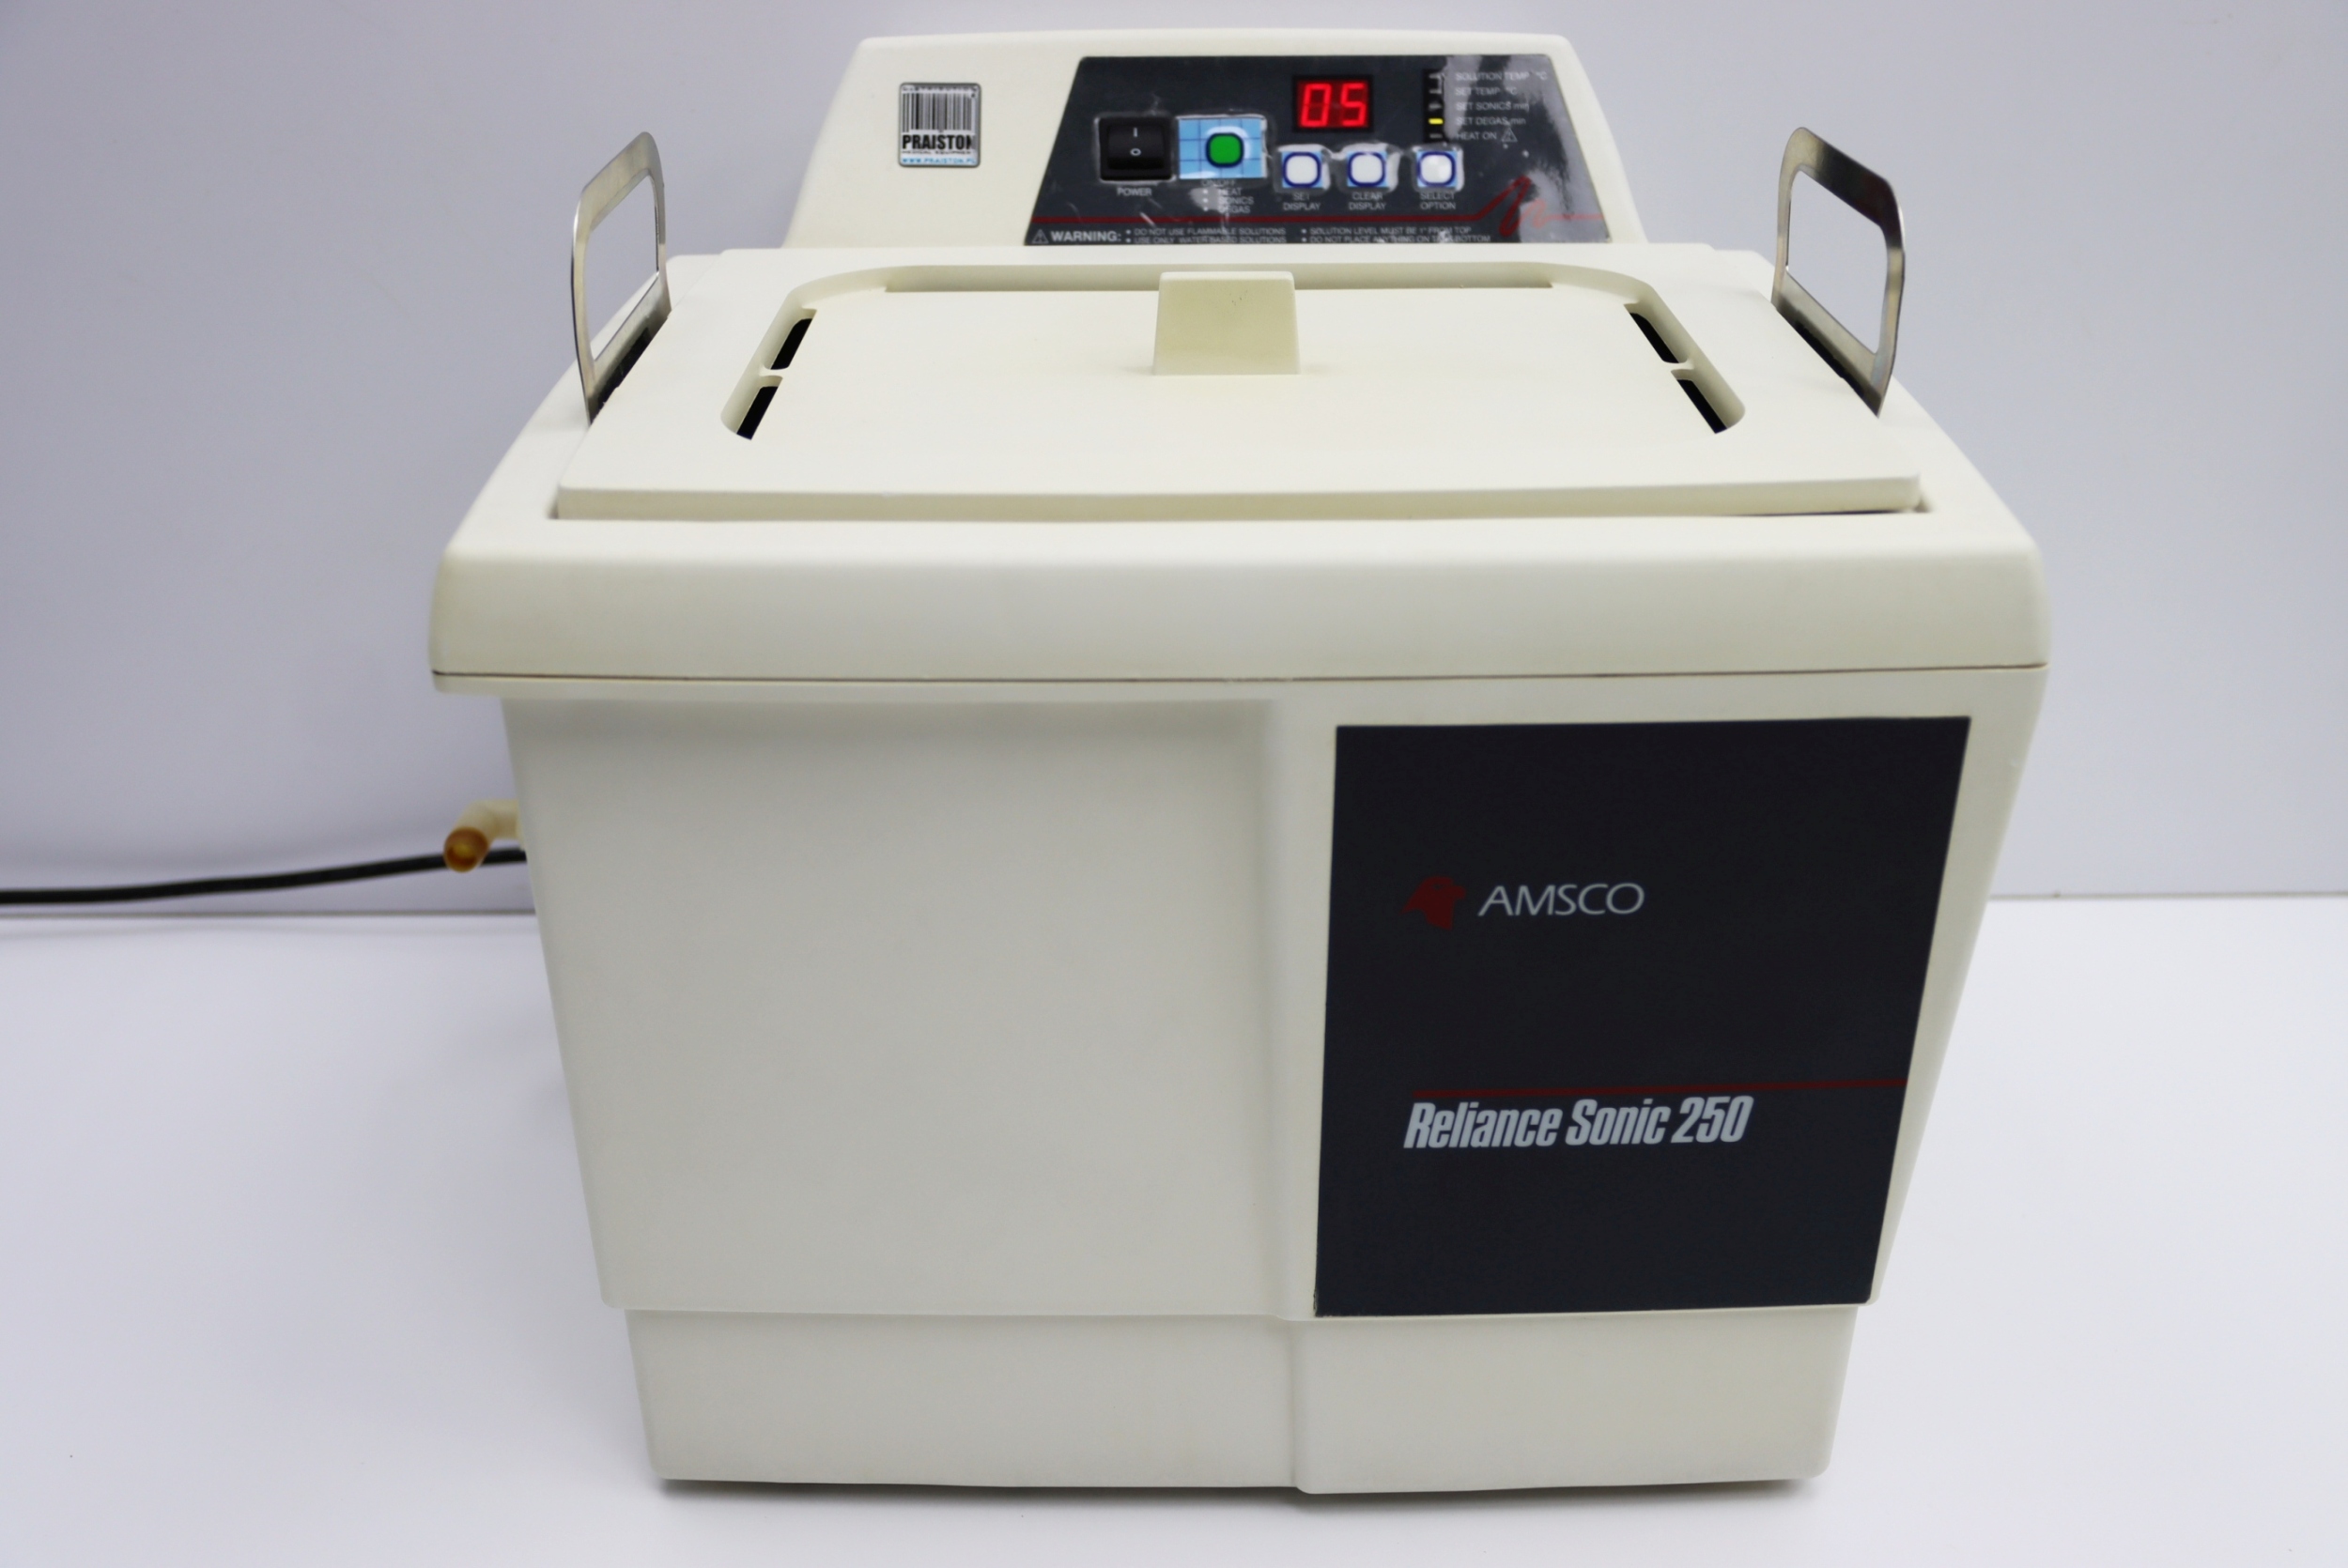 Myjnie ultradźwiękowe używane STERIS AMSCO SONIC 250-DTH - Praiston rekondycjonowany